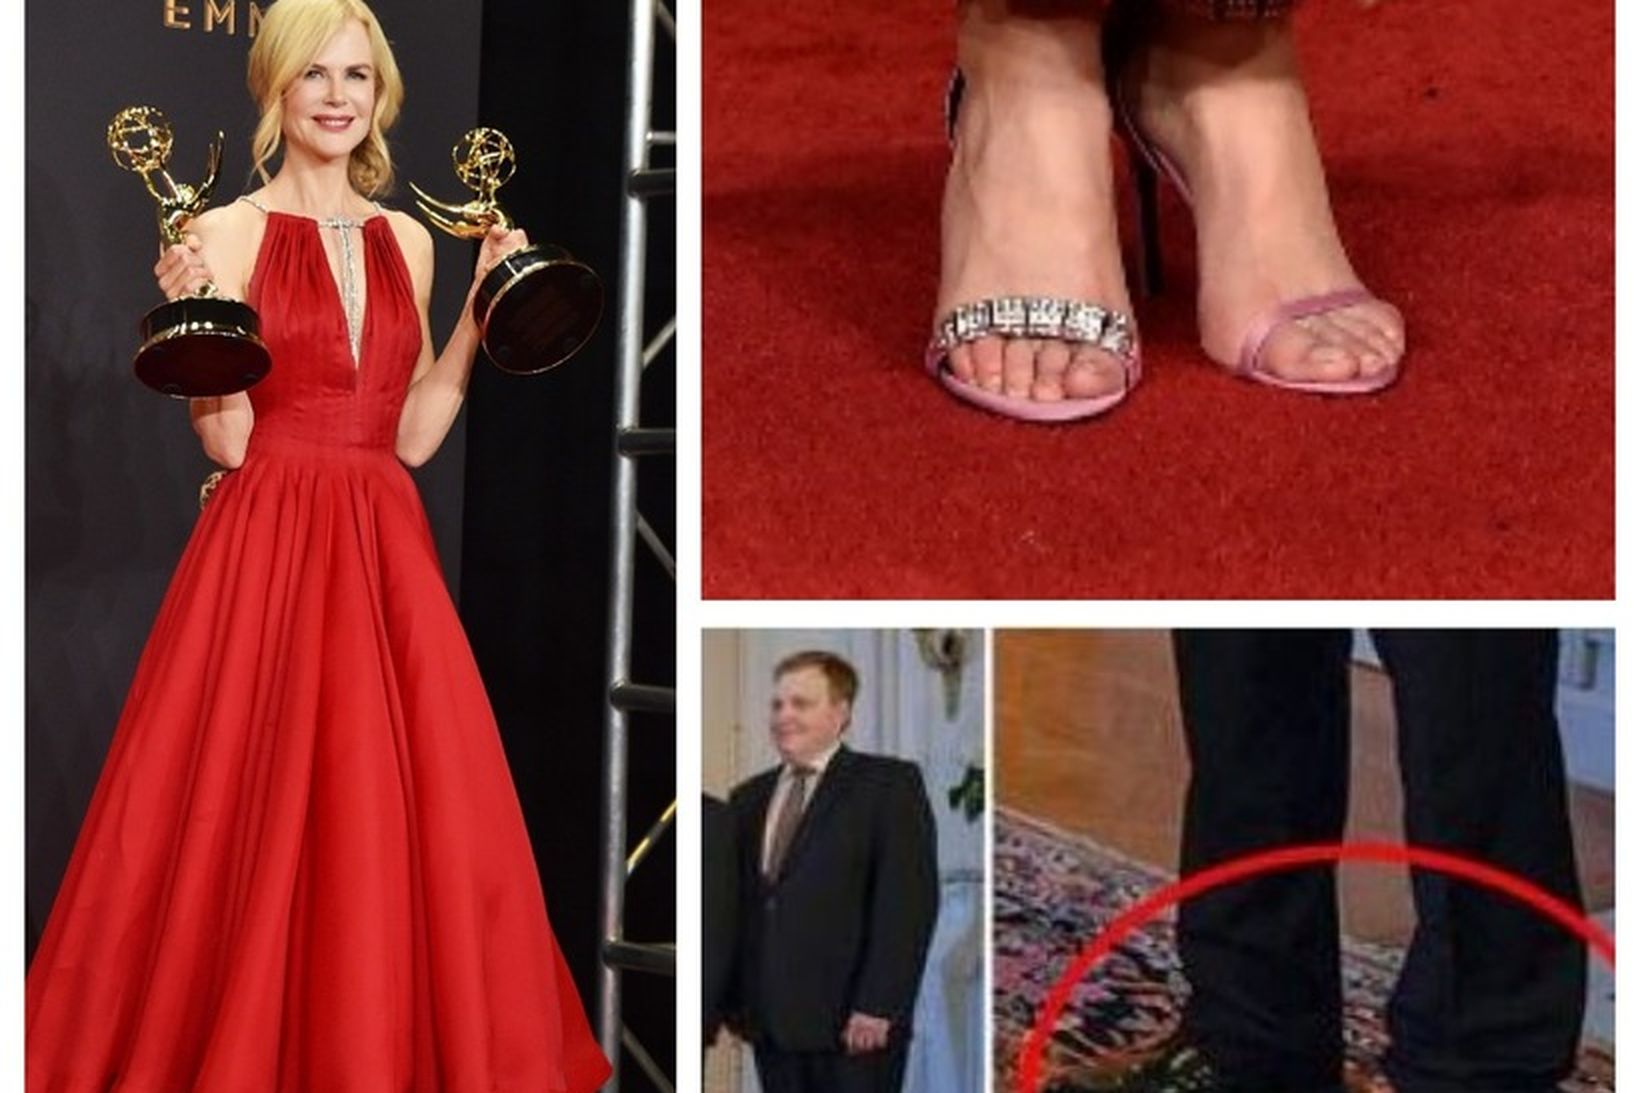 Skórnir sem Nicole Kidman klæddist á Emmy-verðlaunahátíðinni vakti athygli.